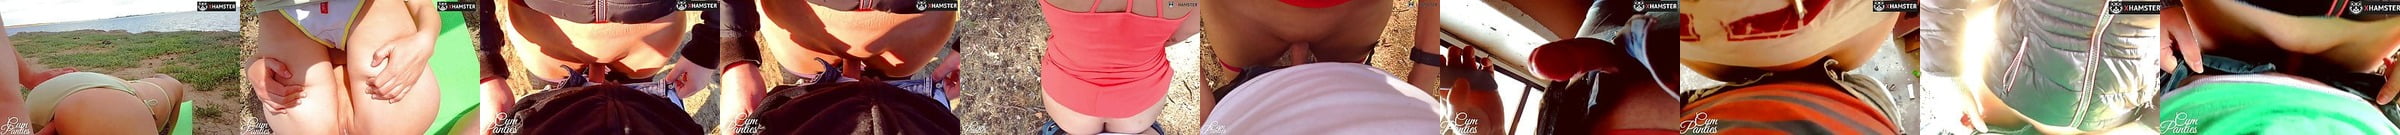 Amateur Public Sex Porn Videos Xhamster